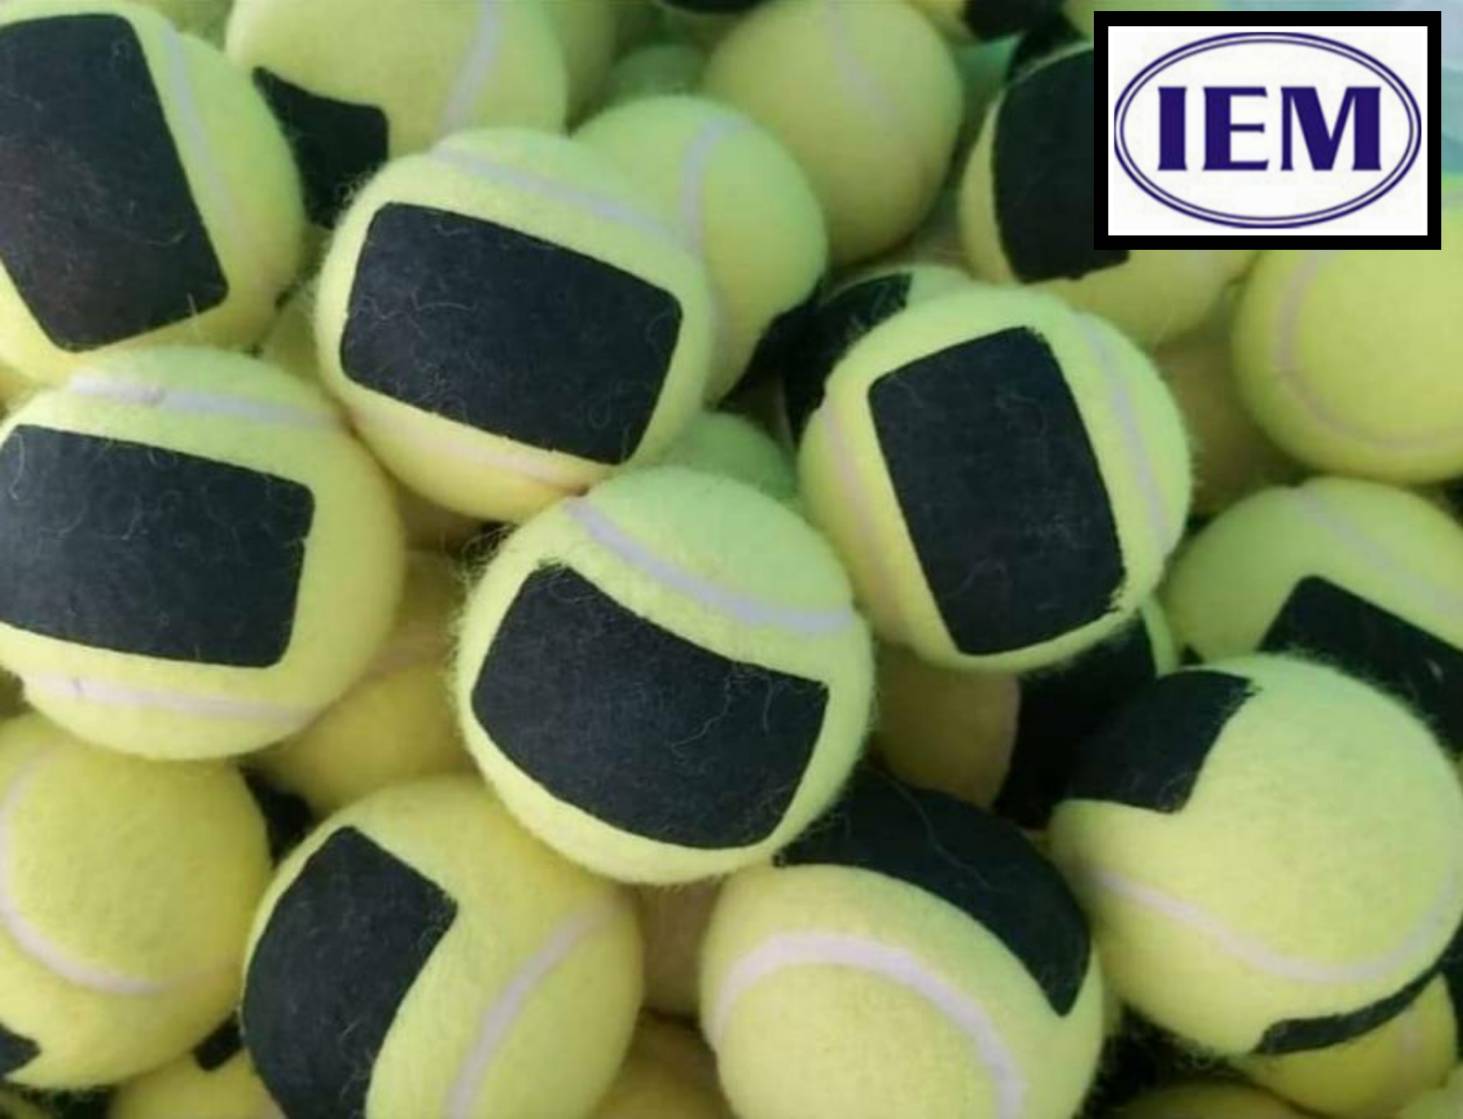 ลูกเทนนิสคุณภาพดี บรรจุ 100 ลูก (ลูกละ 10 บาท) Tennis Ball จำหน่ายโดย IEM SPORT มั่นใจในคุณภาพ! สีคาดดำ